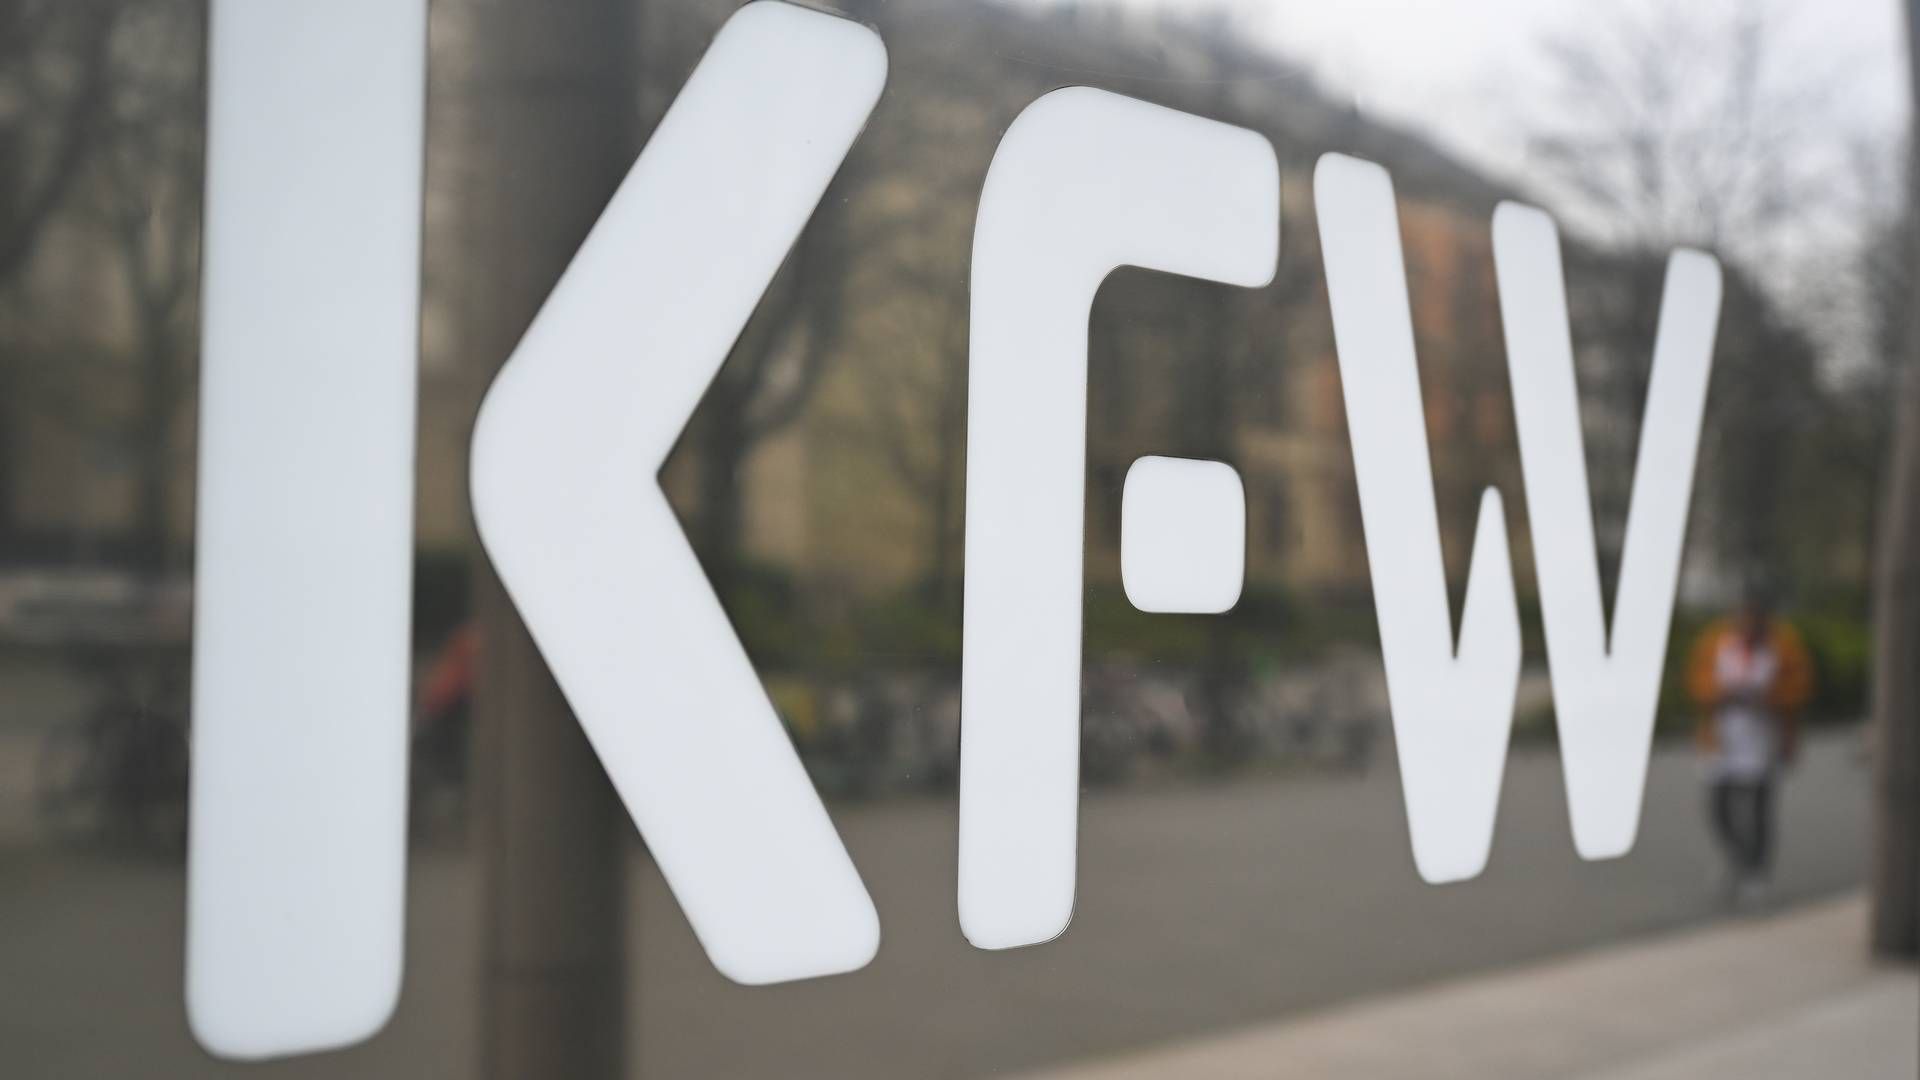 KfW-Schriftzug am Unternehmenssitz | Foto: picture alliance/dpa | Arne Dedert